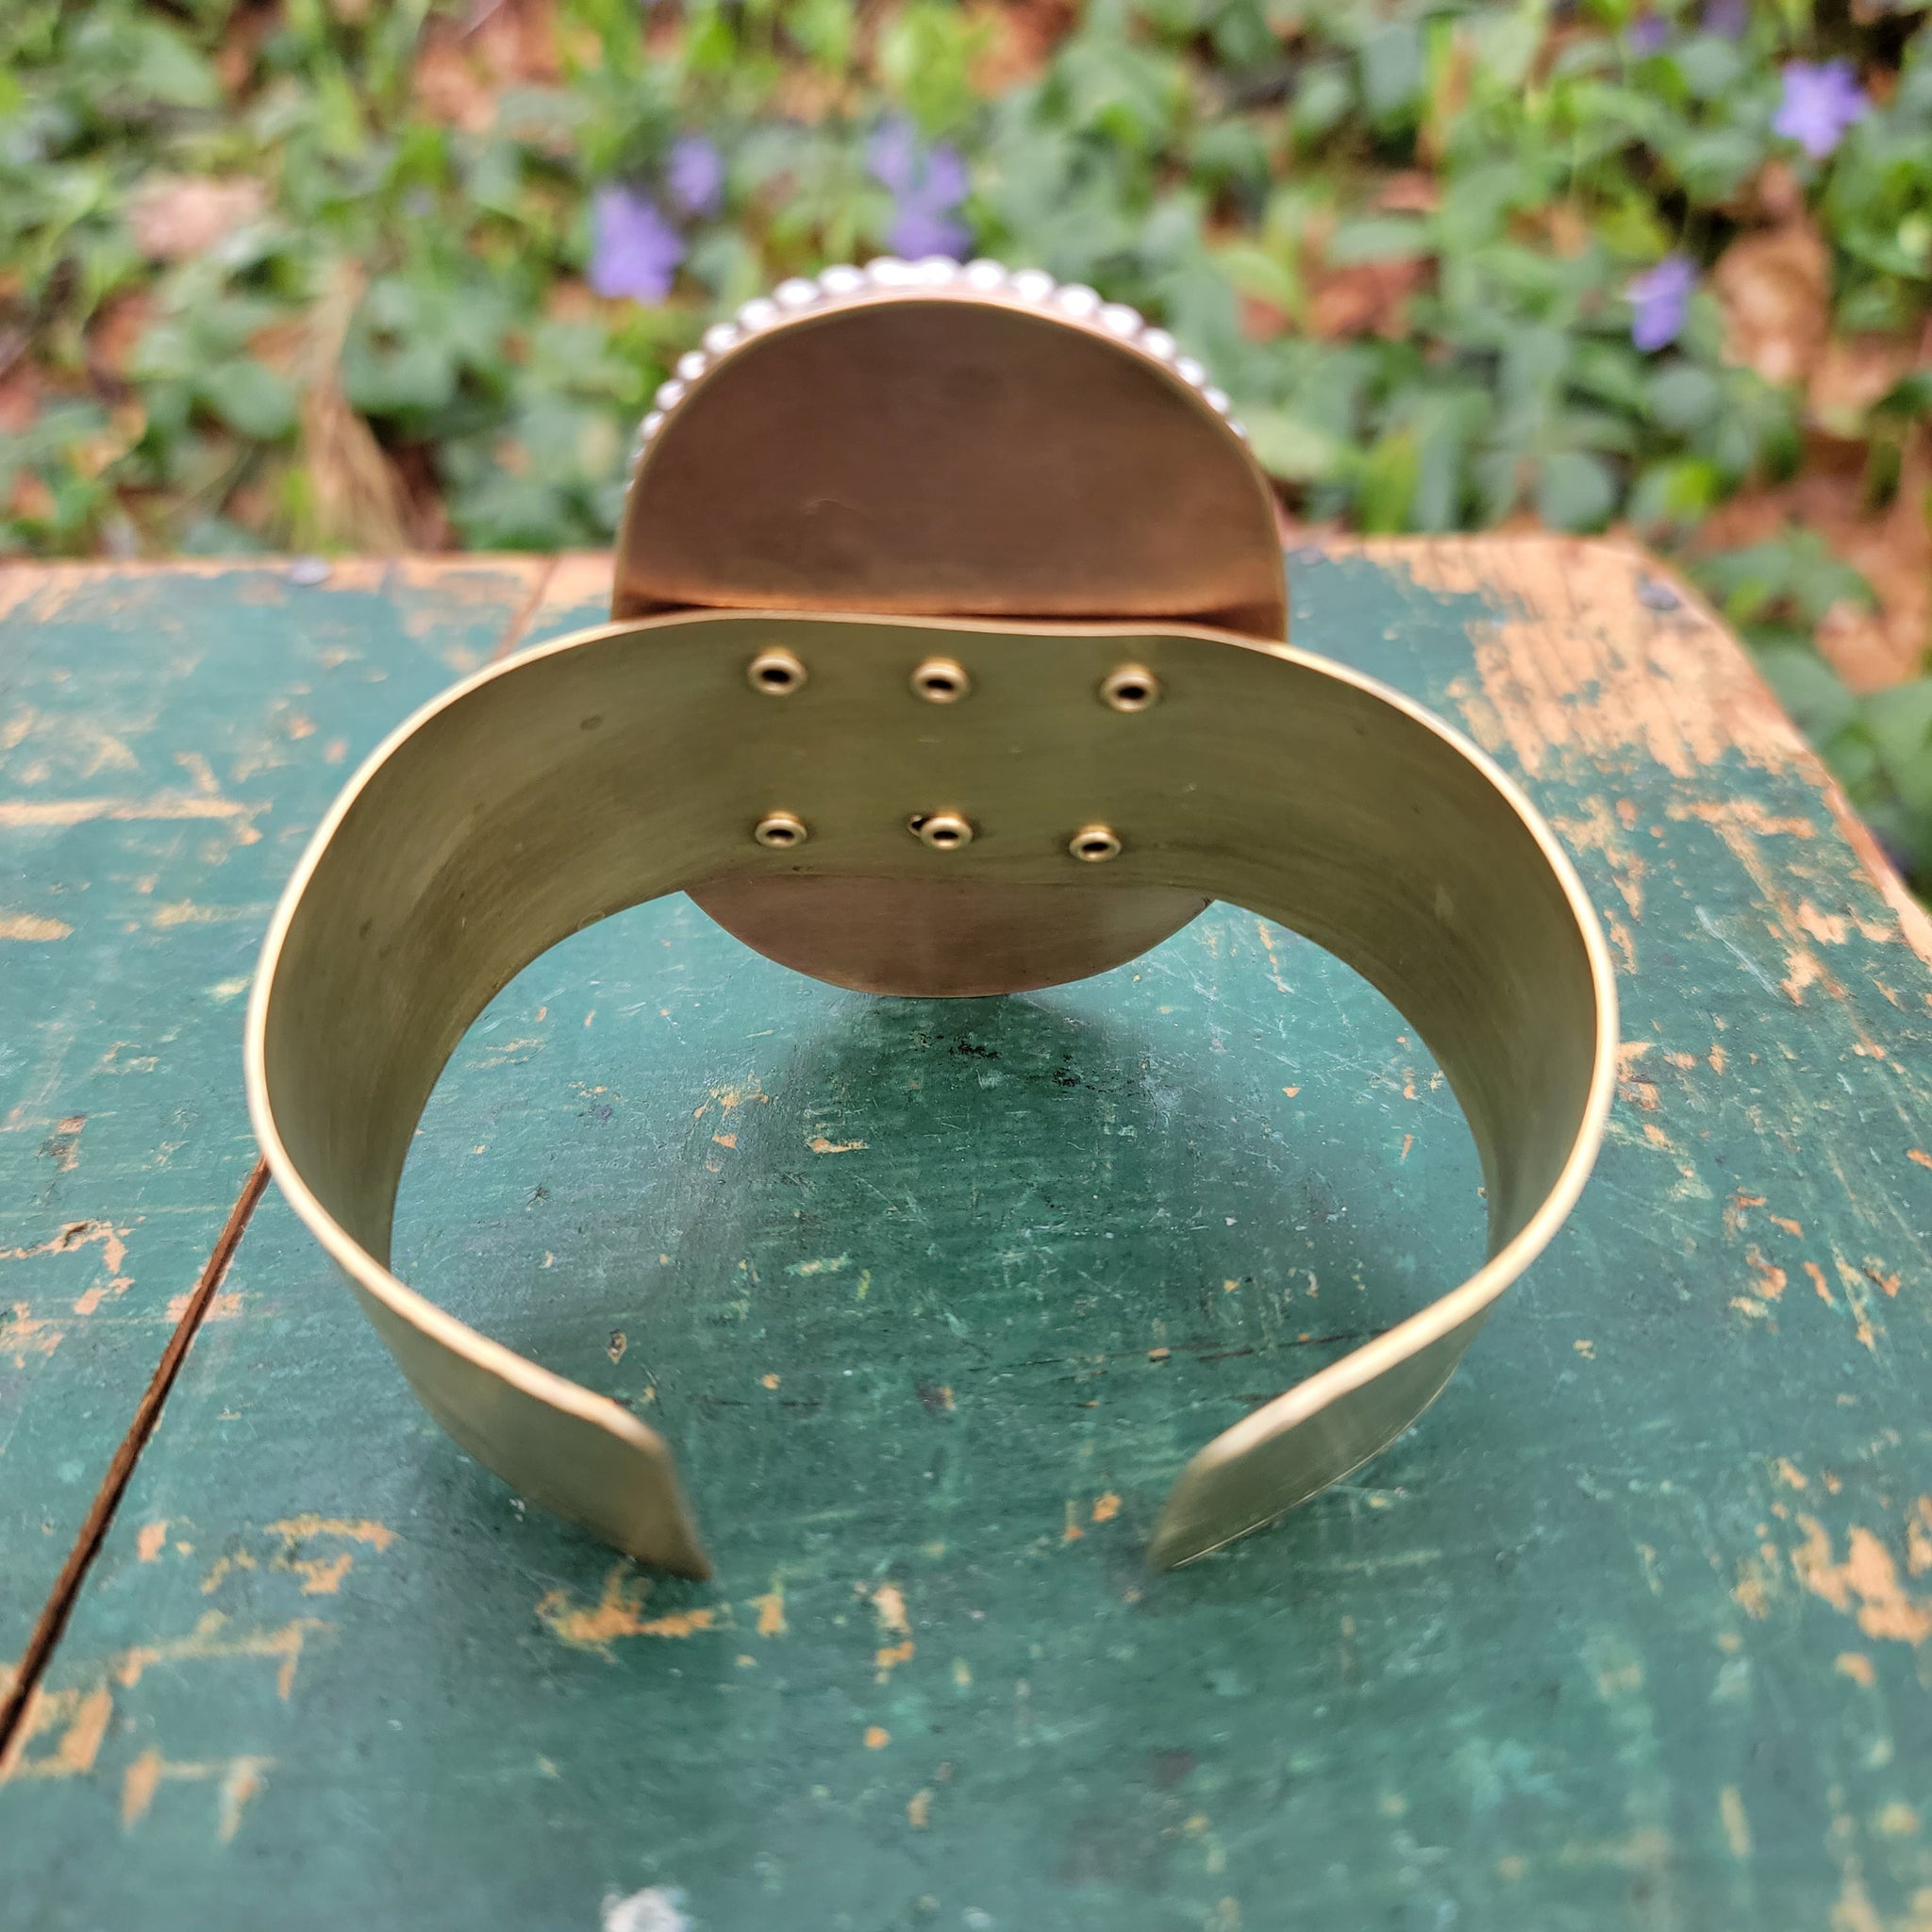 Green Wood Grain Ceramic Cab Statement Cuff Bracelets in Brass